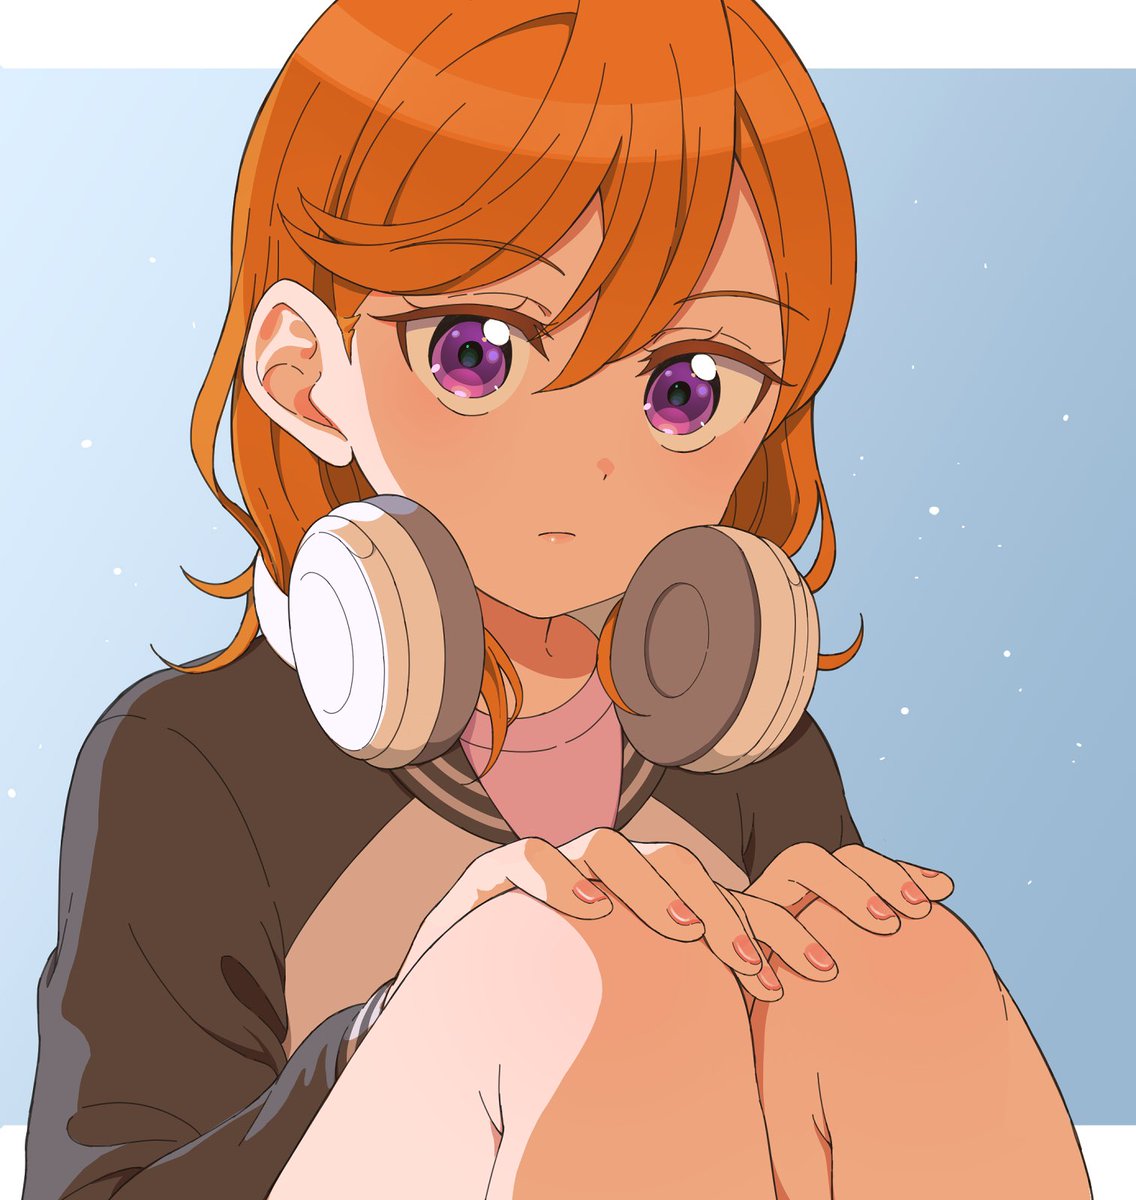 shibuya kanon 1girl headphones around neck headphones solo purple eyes orange hair jacket  illustration images